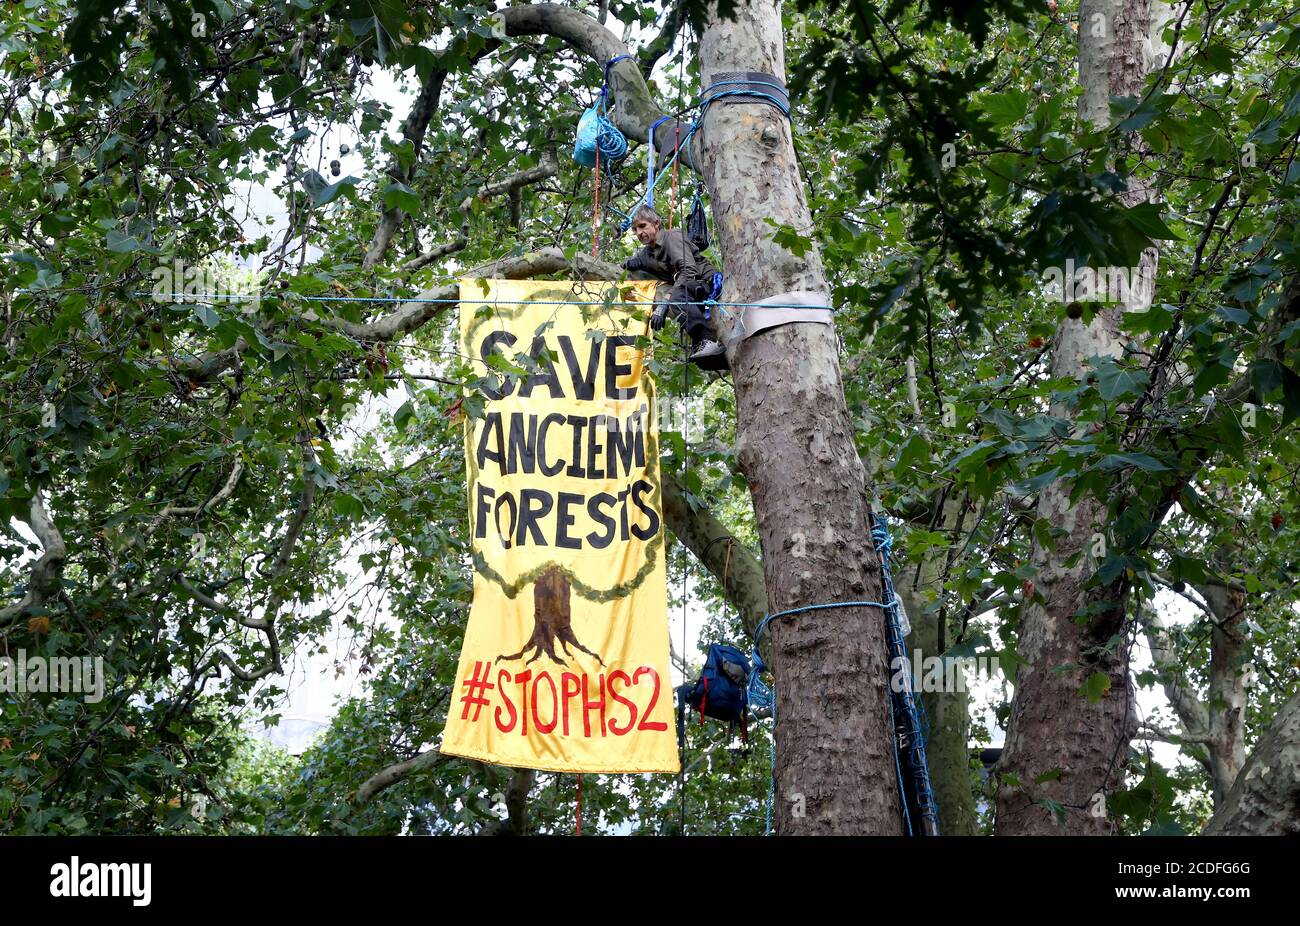 Un activista Stop HS2 despliega una bandera en los árboles fuera de la Estación Euston en Londres, mientras los activistas establecen un campamento dentro de los árboles como parte del fin de semana de acción de la Rebelión de extinción más amplio en todo el país. Foto de stock